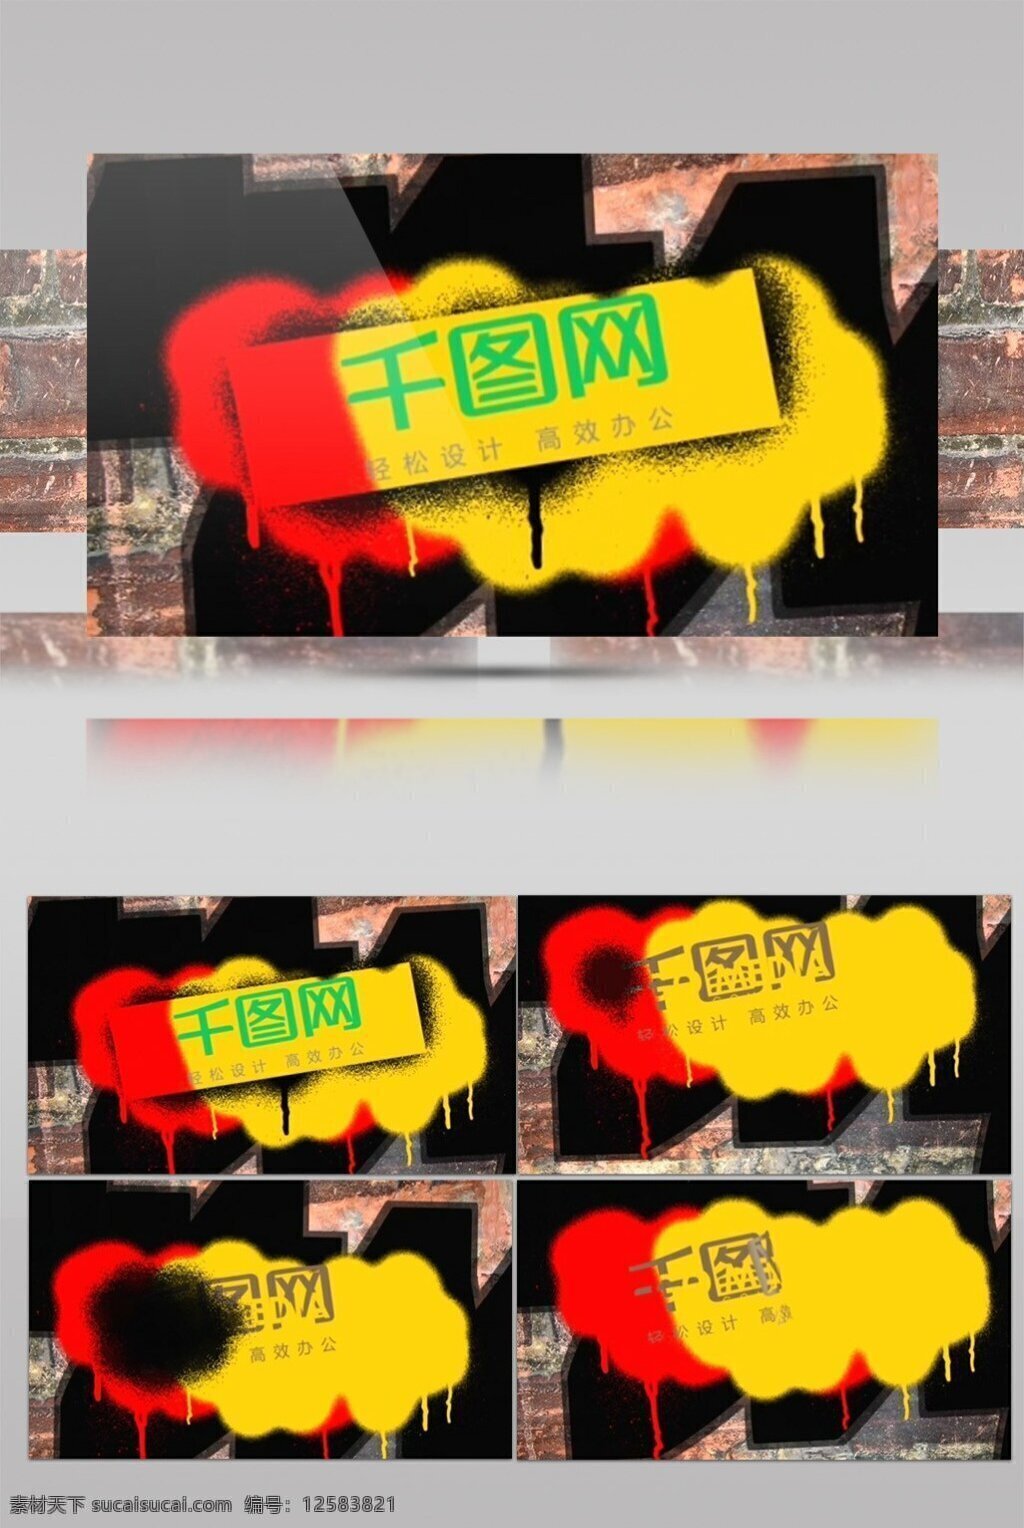 街头 涂鸦 式 logo 演绎 片头 红色 黄色 黑色 墙壁 油漆 街头嘻哈 涂鸦l ogo演绎 模糊出字 涂抹 喷墨